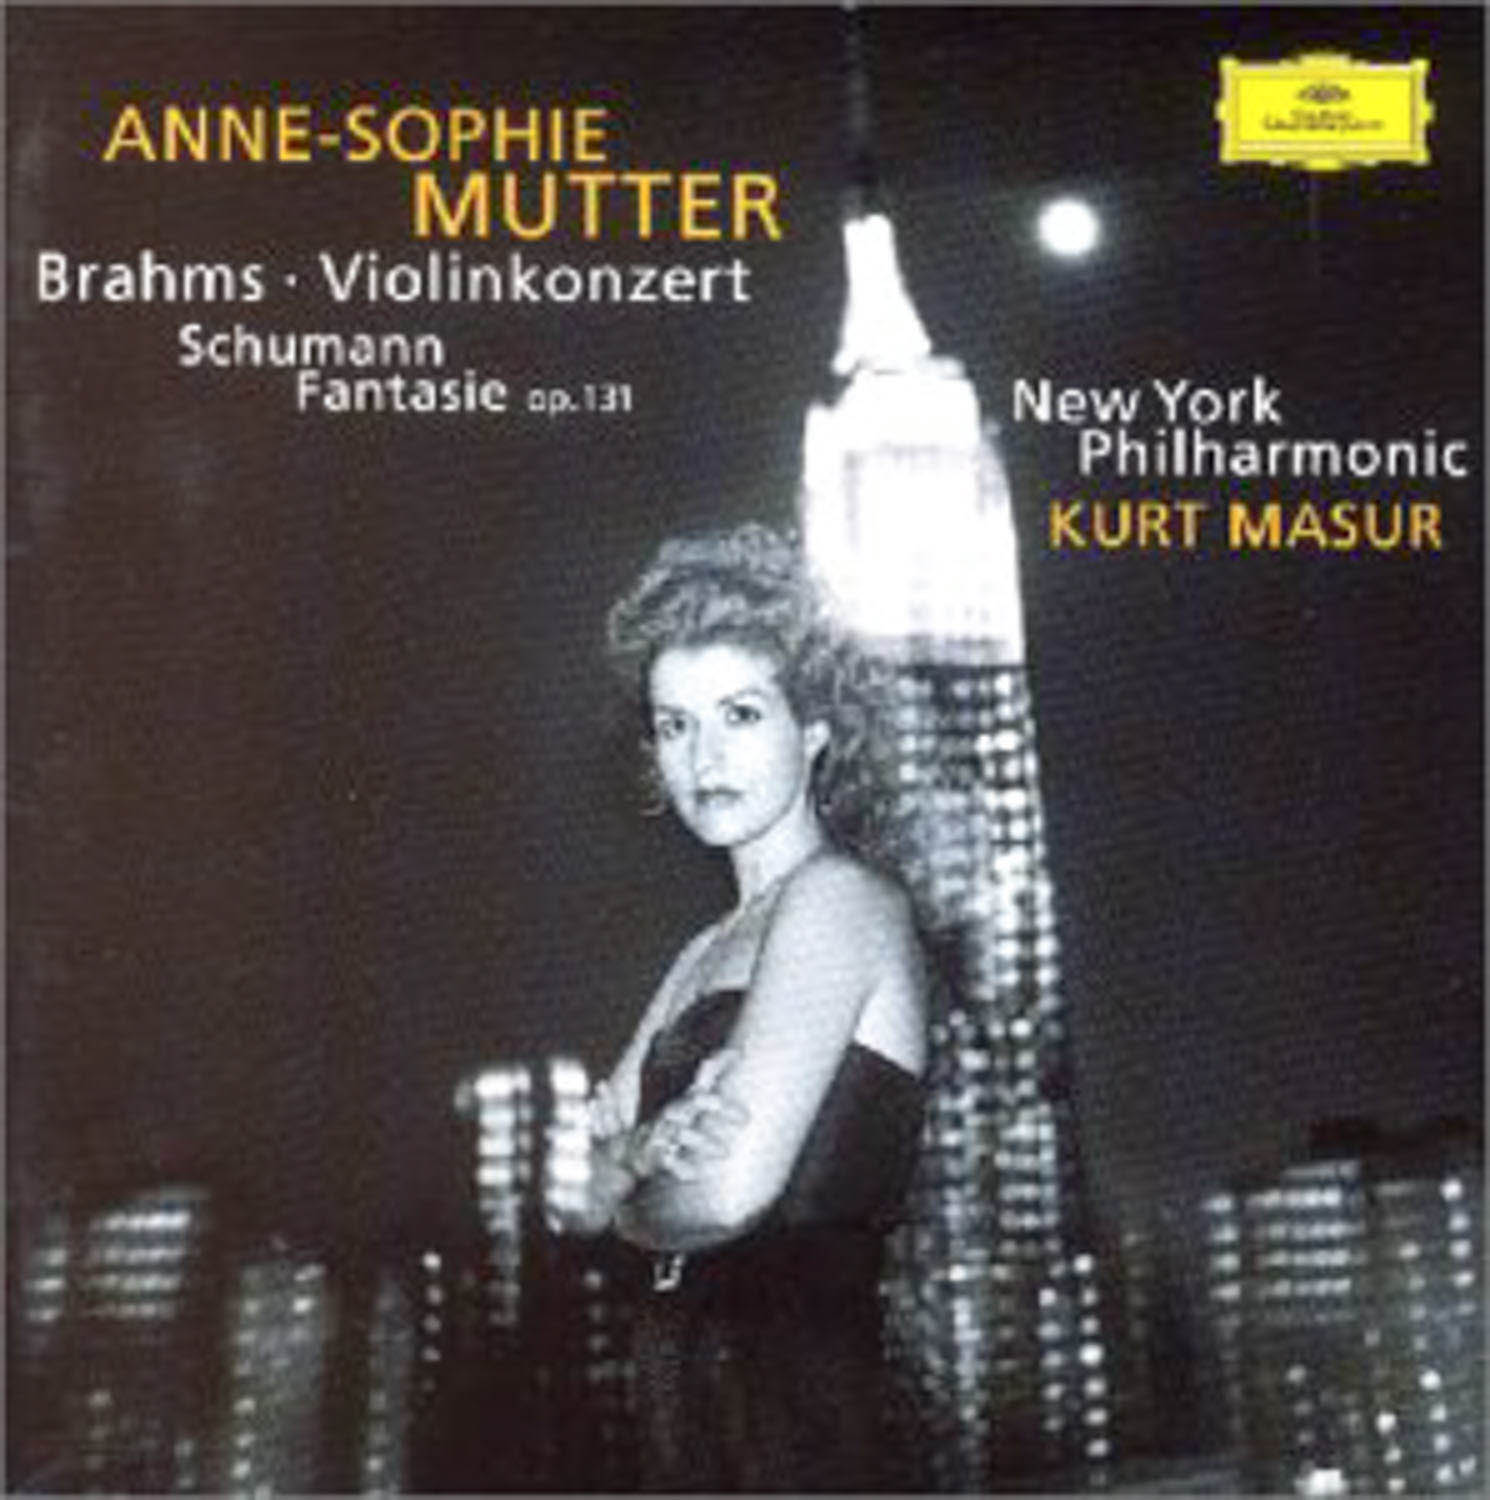 Anne-Sophie Mutter; Kurt Masur, New York Philharmonic  Brahms: Violinkonzert op. 77; Schumann: Fantasie op. 131  *Audio-CD*. 